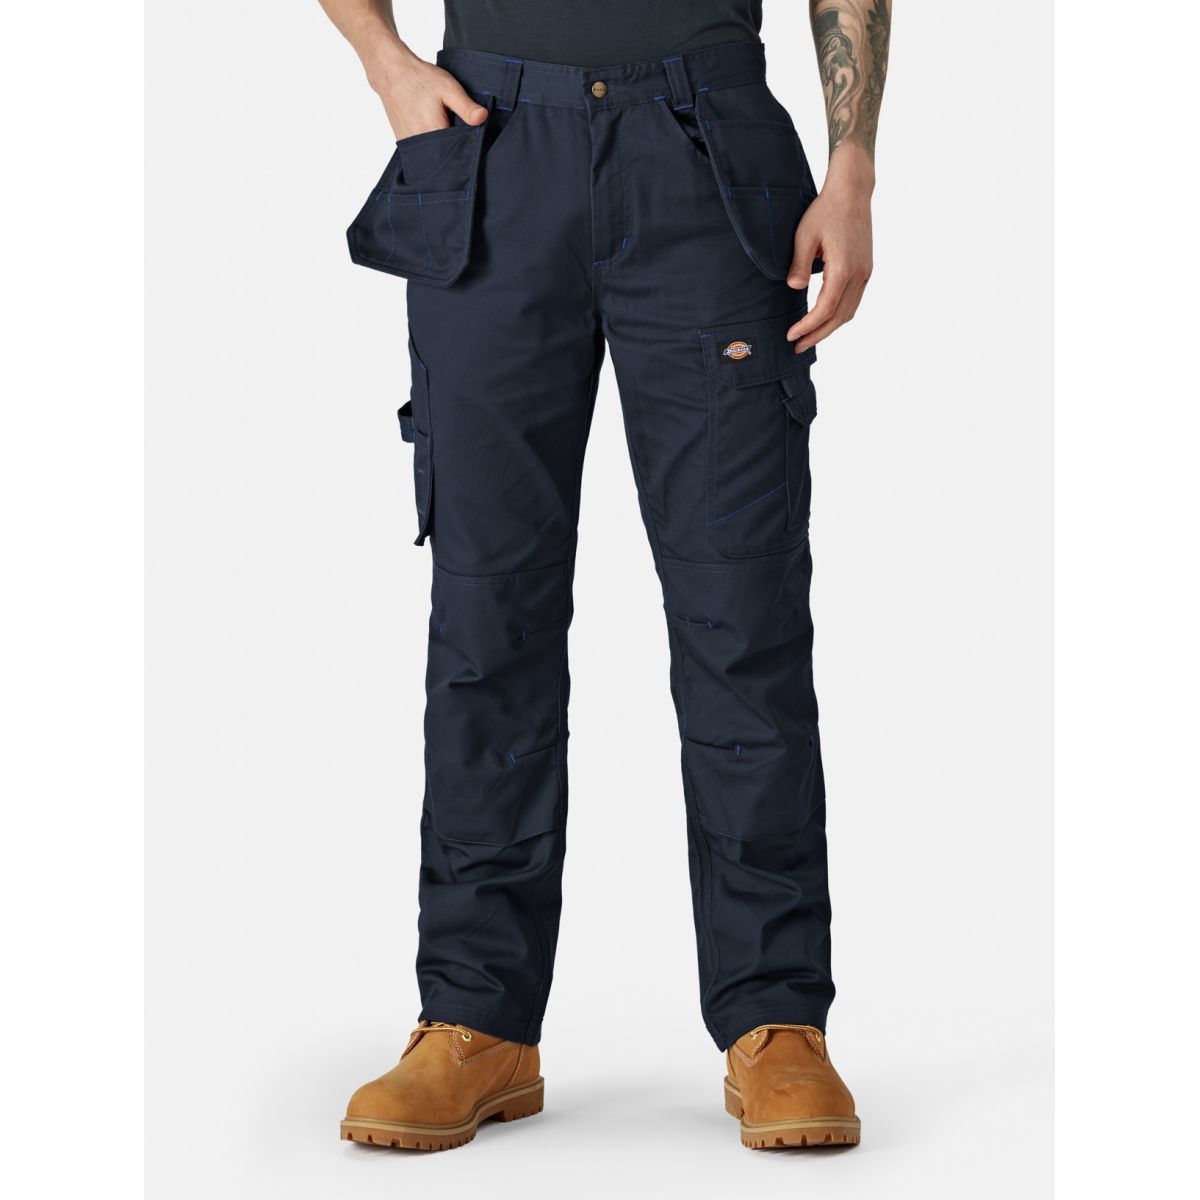 Pantalon Redhawk Pro Bleu marine - Dickies - Taille 48 0